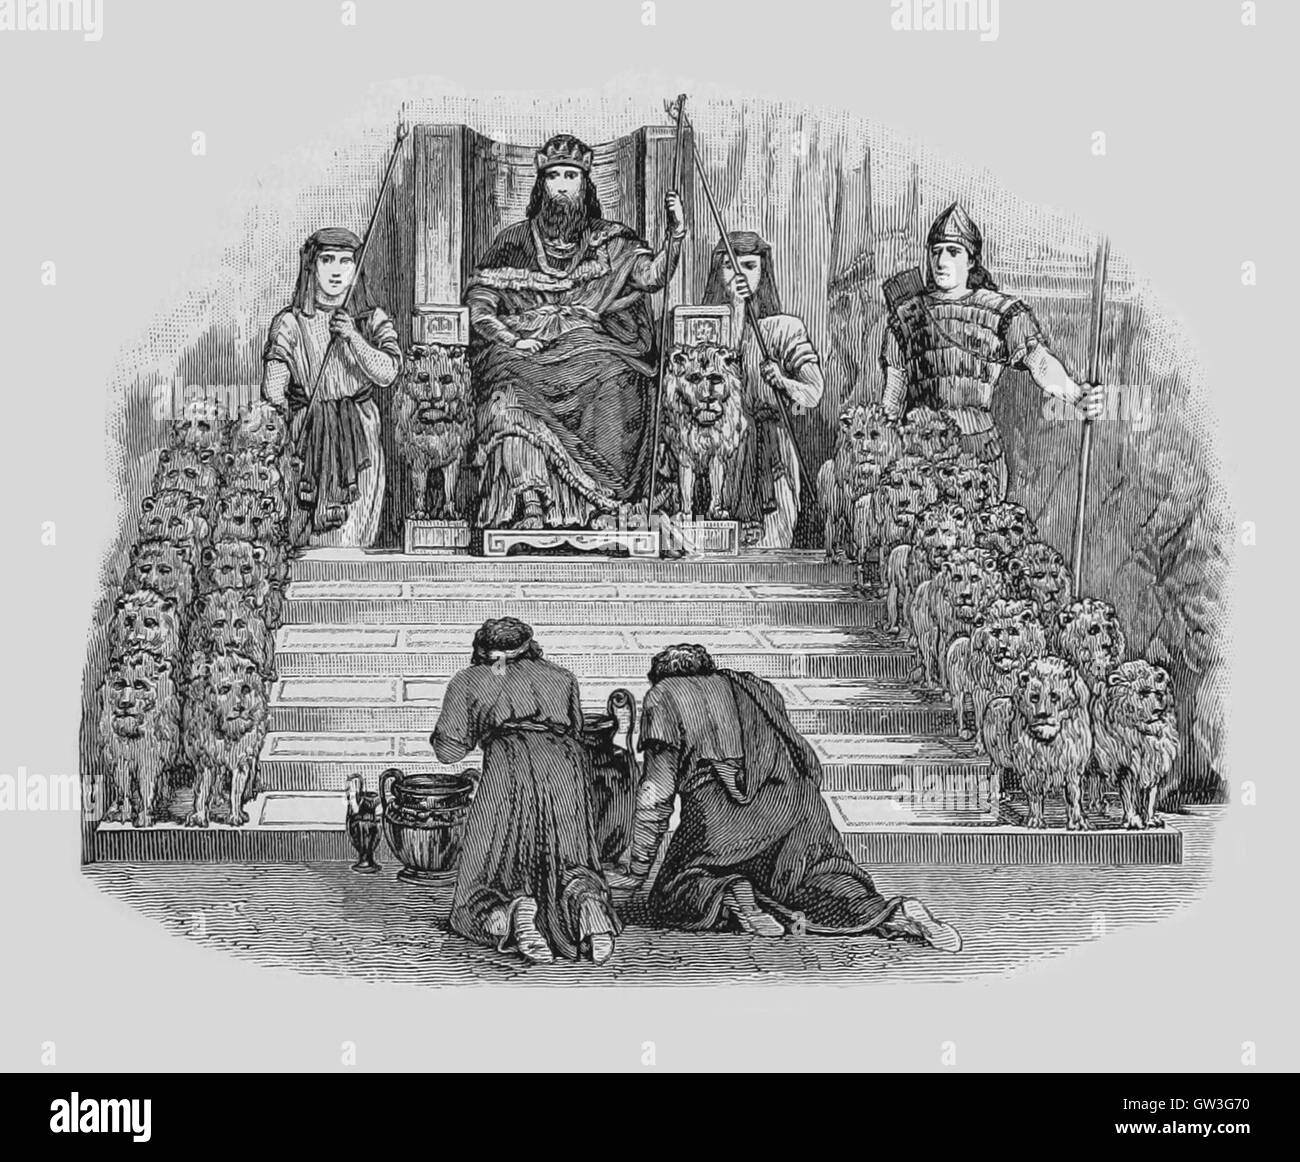 Le roi Salomon sur son trône, le trône de Salomon est le trône du Roi  Salomon dans la Bible hébraïque, et est un motif dans le judaïsme, le  christianisme et l'Islam. Salomon